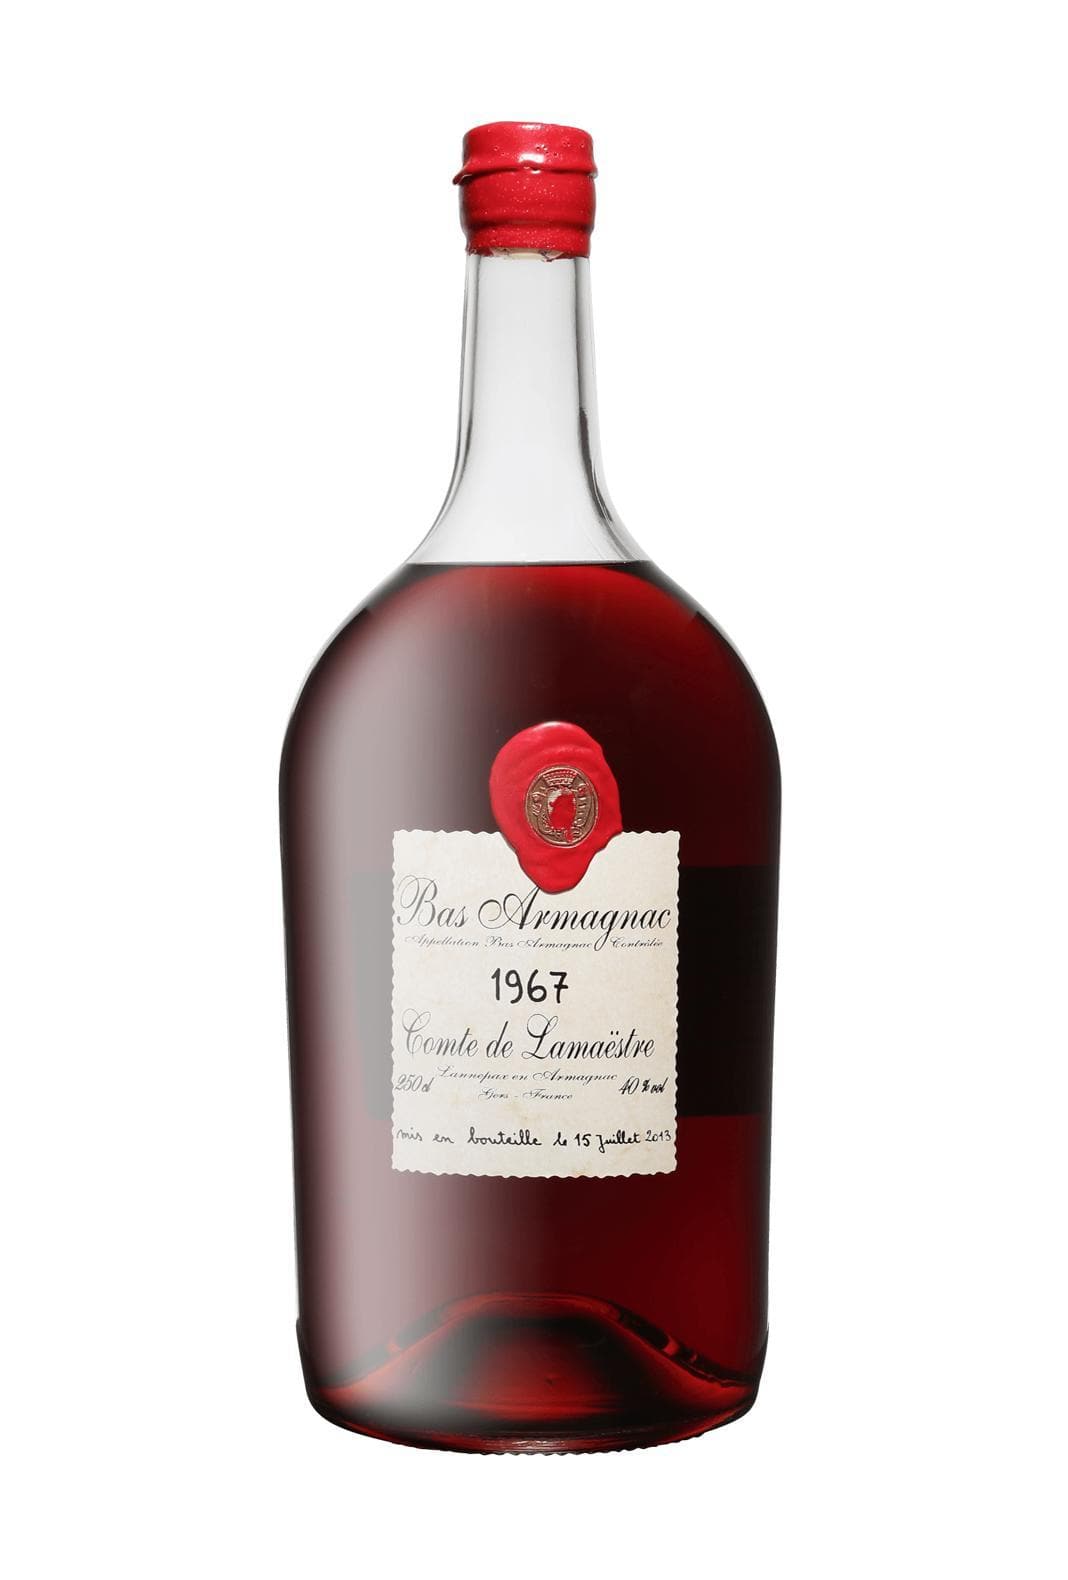 Comte de Lamaestre Bas Armagnac 1967 40% 2.5l | Brandy | Shop online at Spirits of France